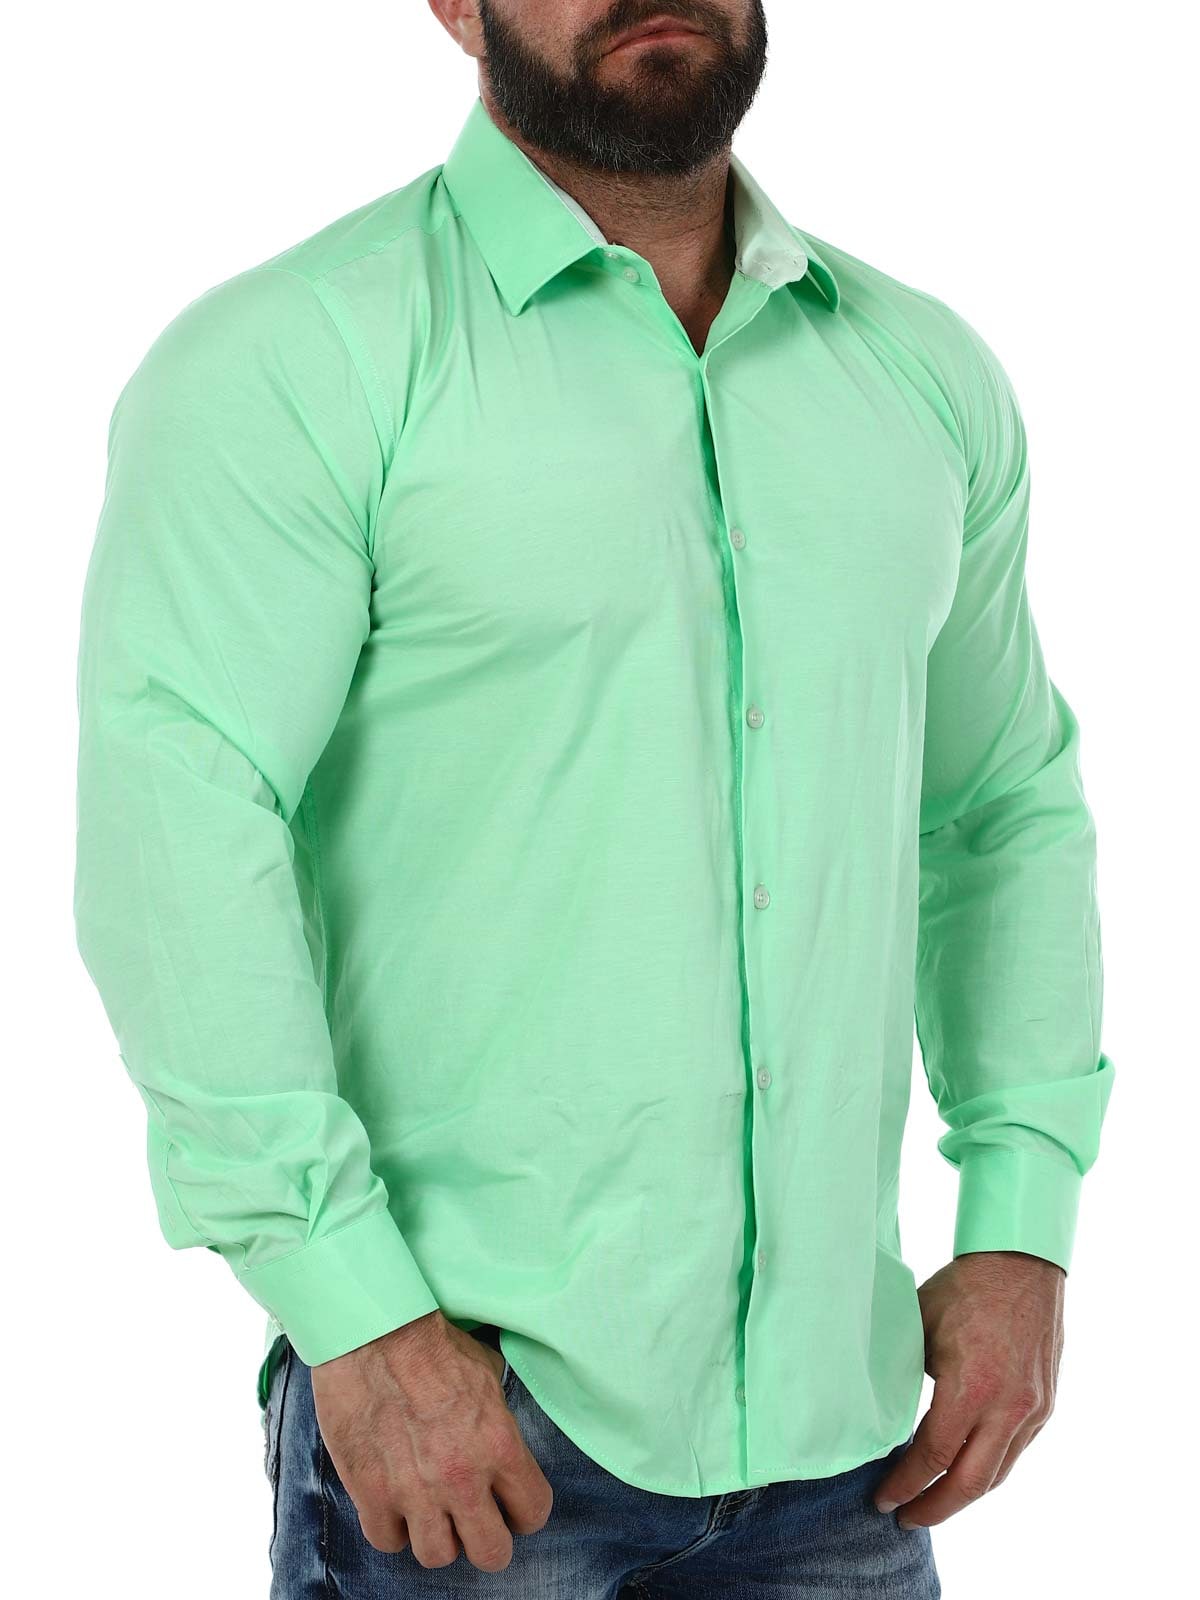 Cassian Skjorte - Light green_3.JPG